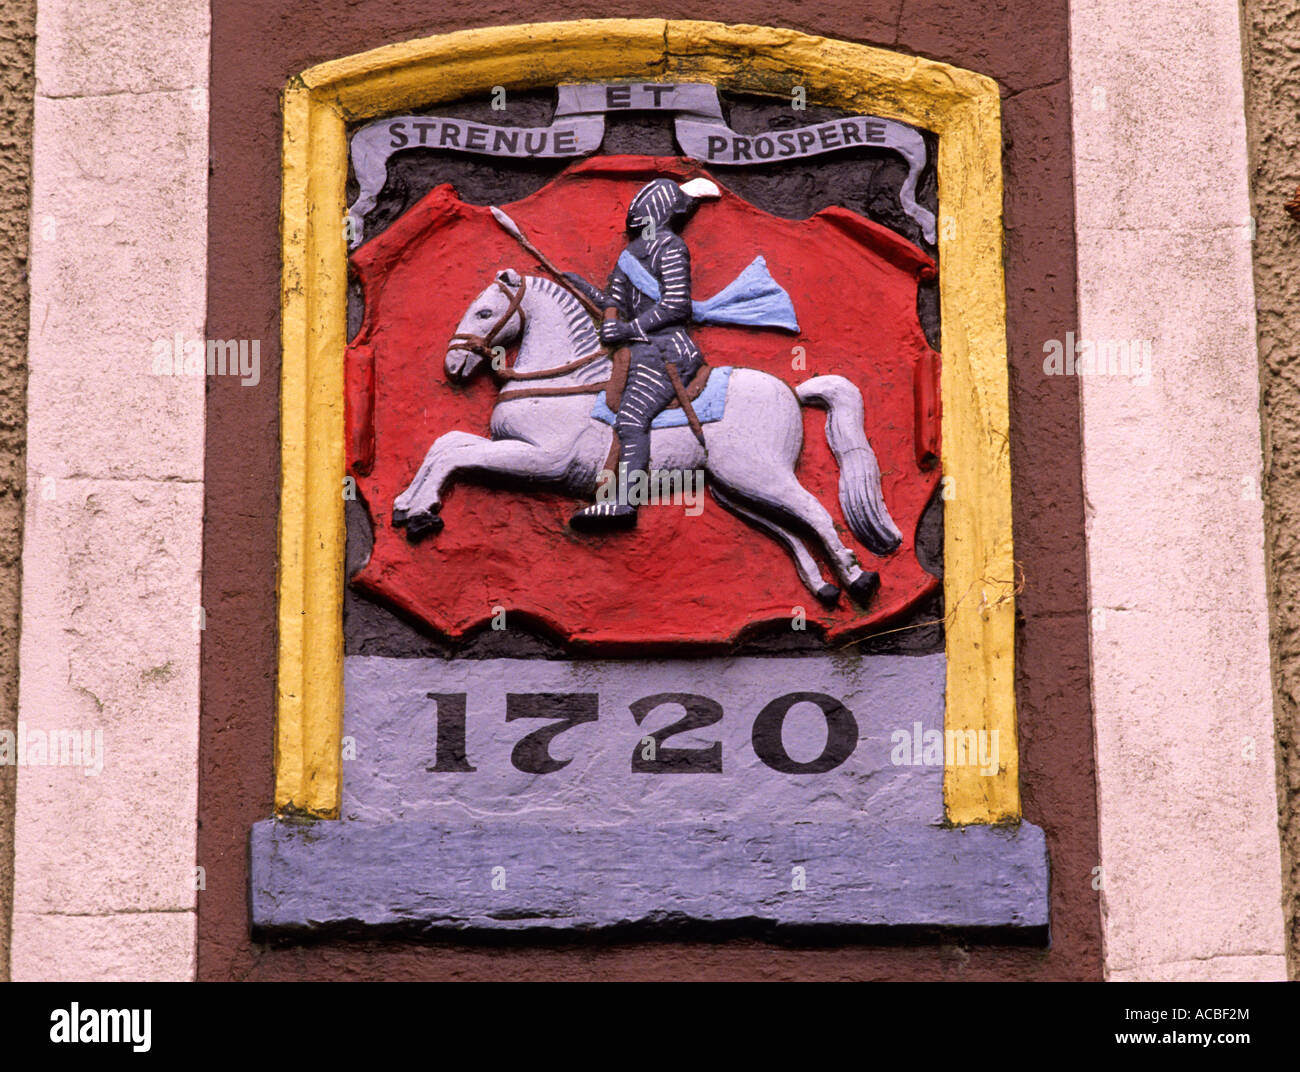 Jedburgh, Burgh, Quartier des armoiries, Newgate, datée du 1720, la région des Borders, Scotland, UK, voyage Scottish town villes bourgs Banque D'Images